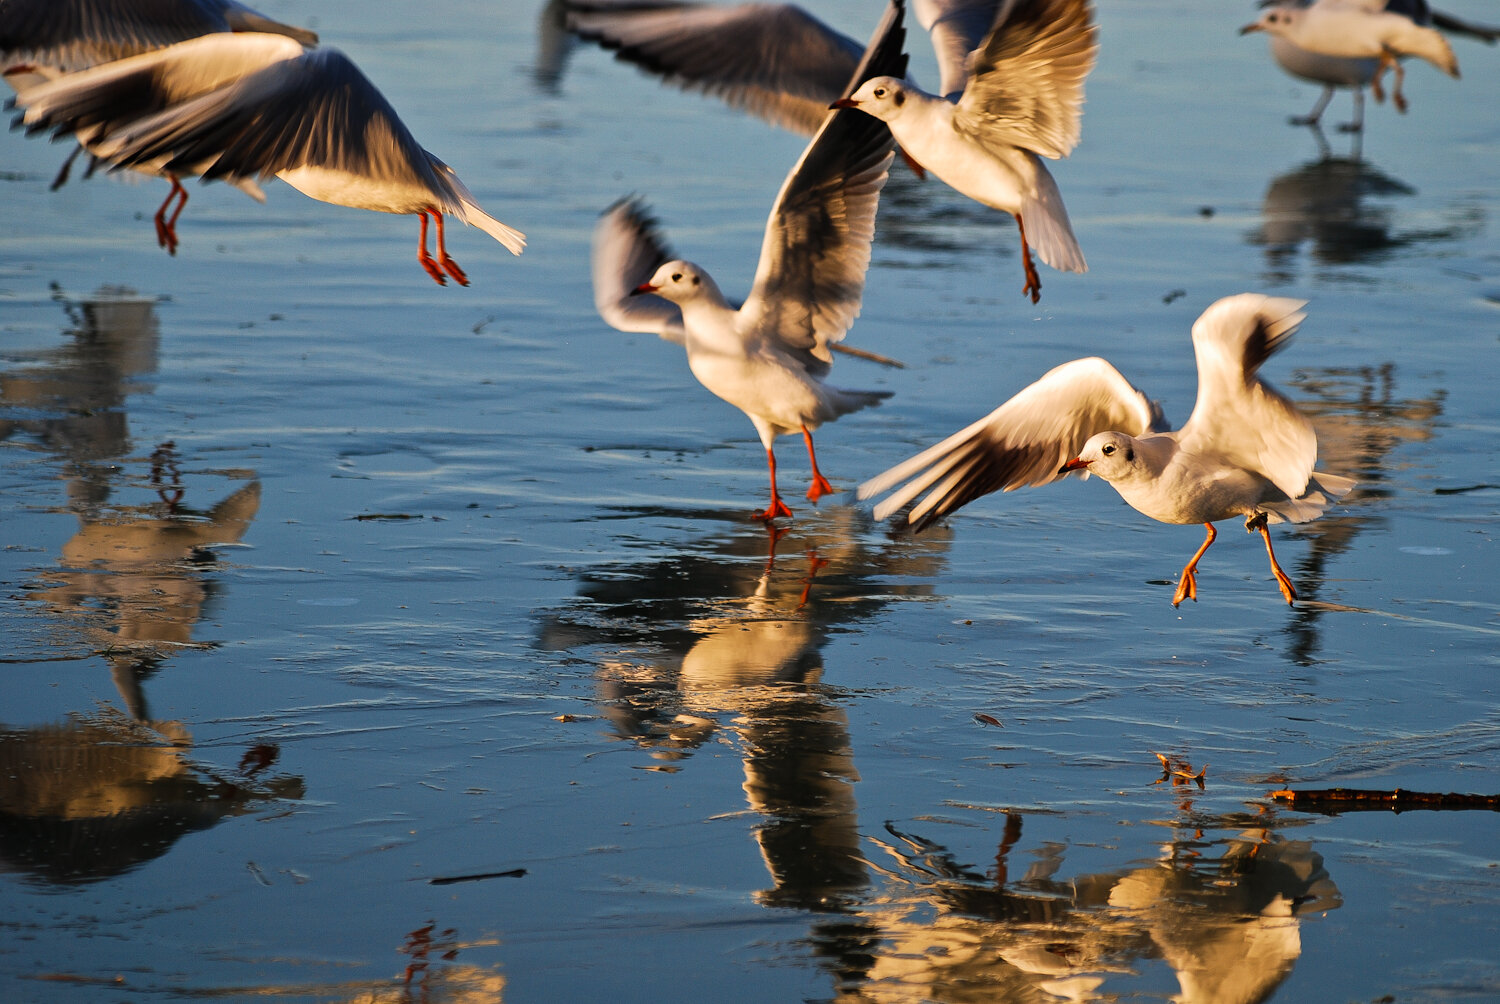 Mentés indul! – Így tudsz segíteni a sérült madarakon